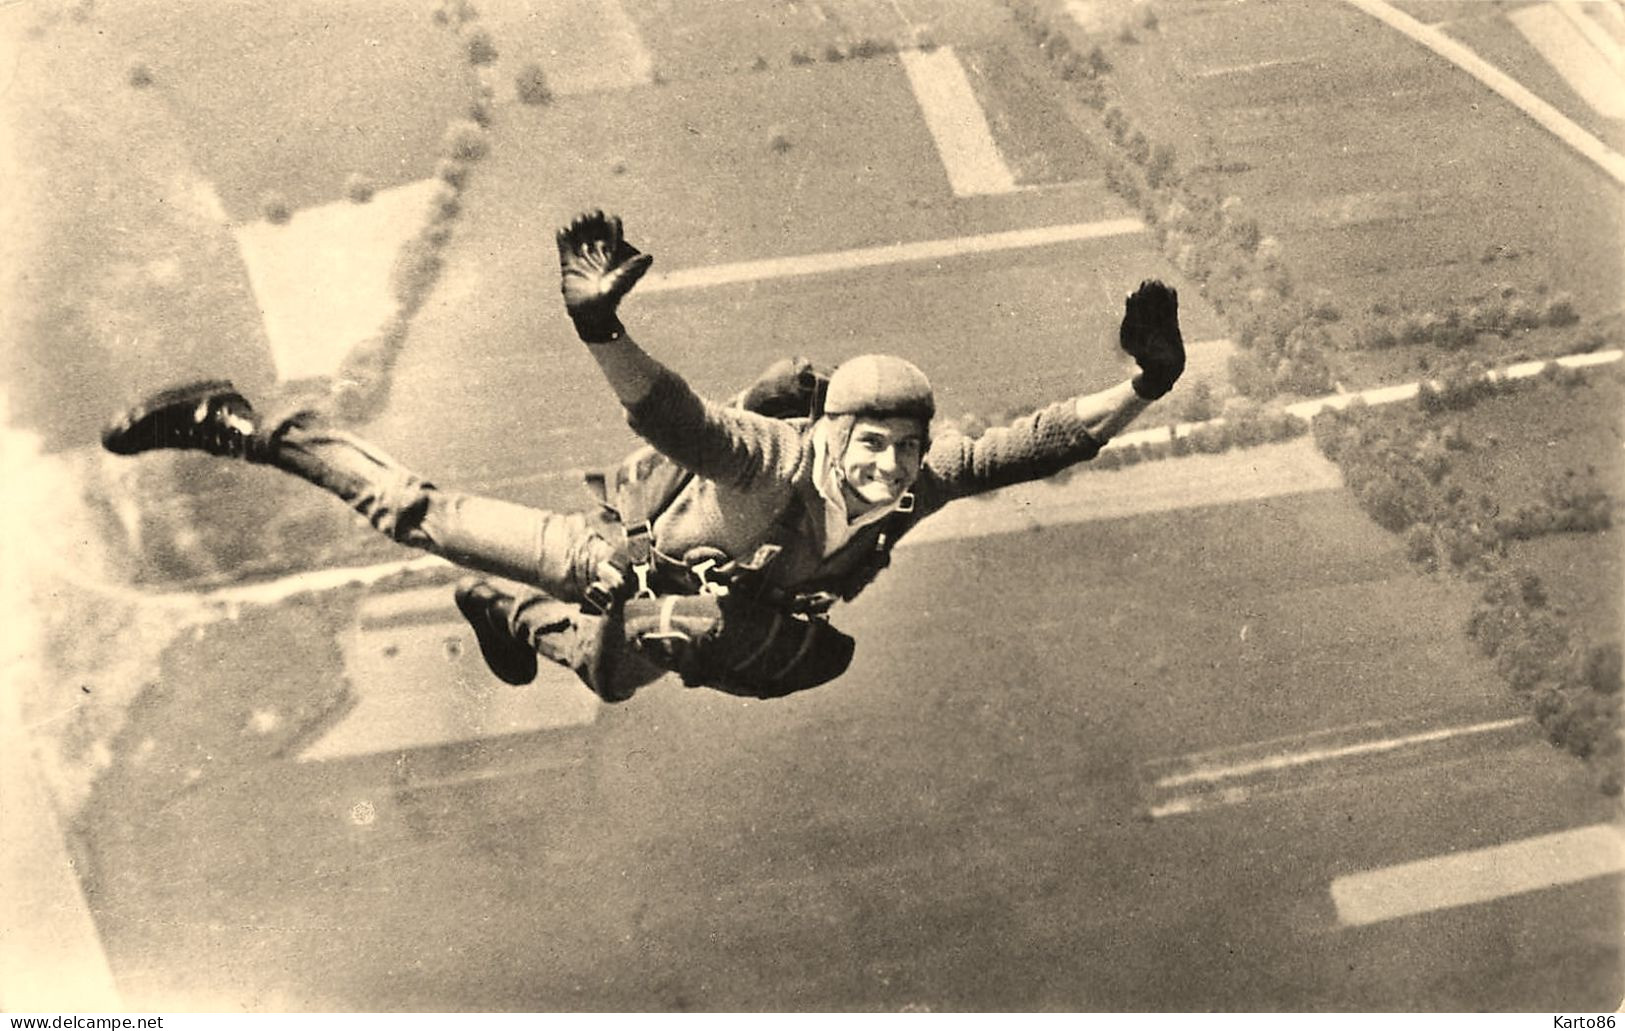 Parachutisme * Le Parachustiste Gérard TREVES Champion Du Monde De Précision D'atterrissage * Aviation - Fallschirmspringen